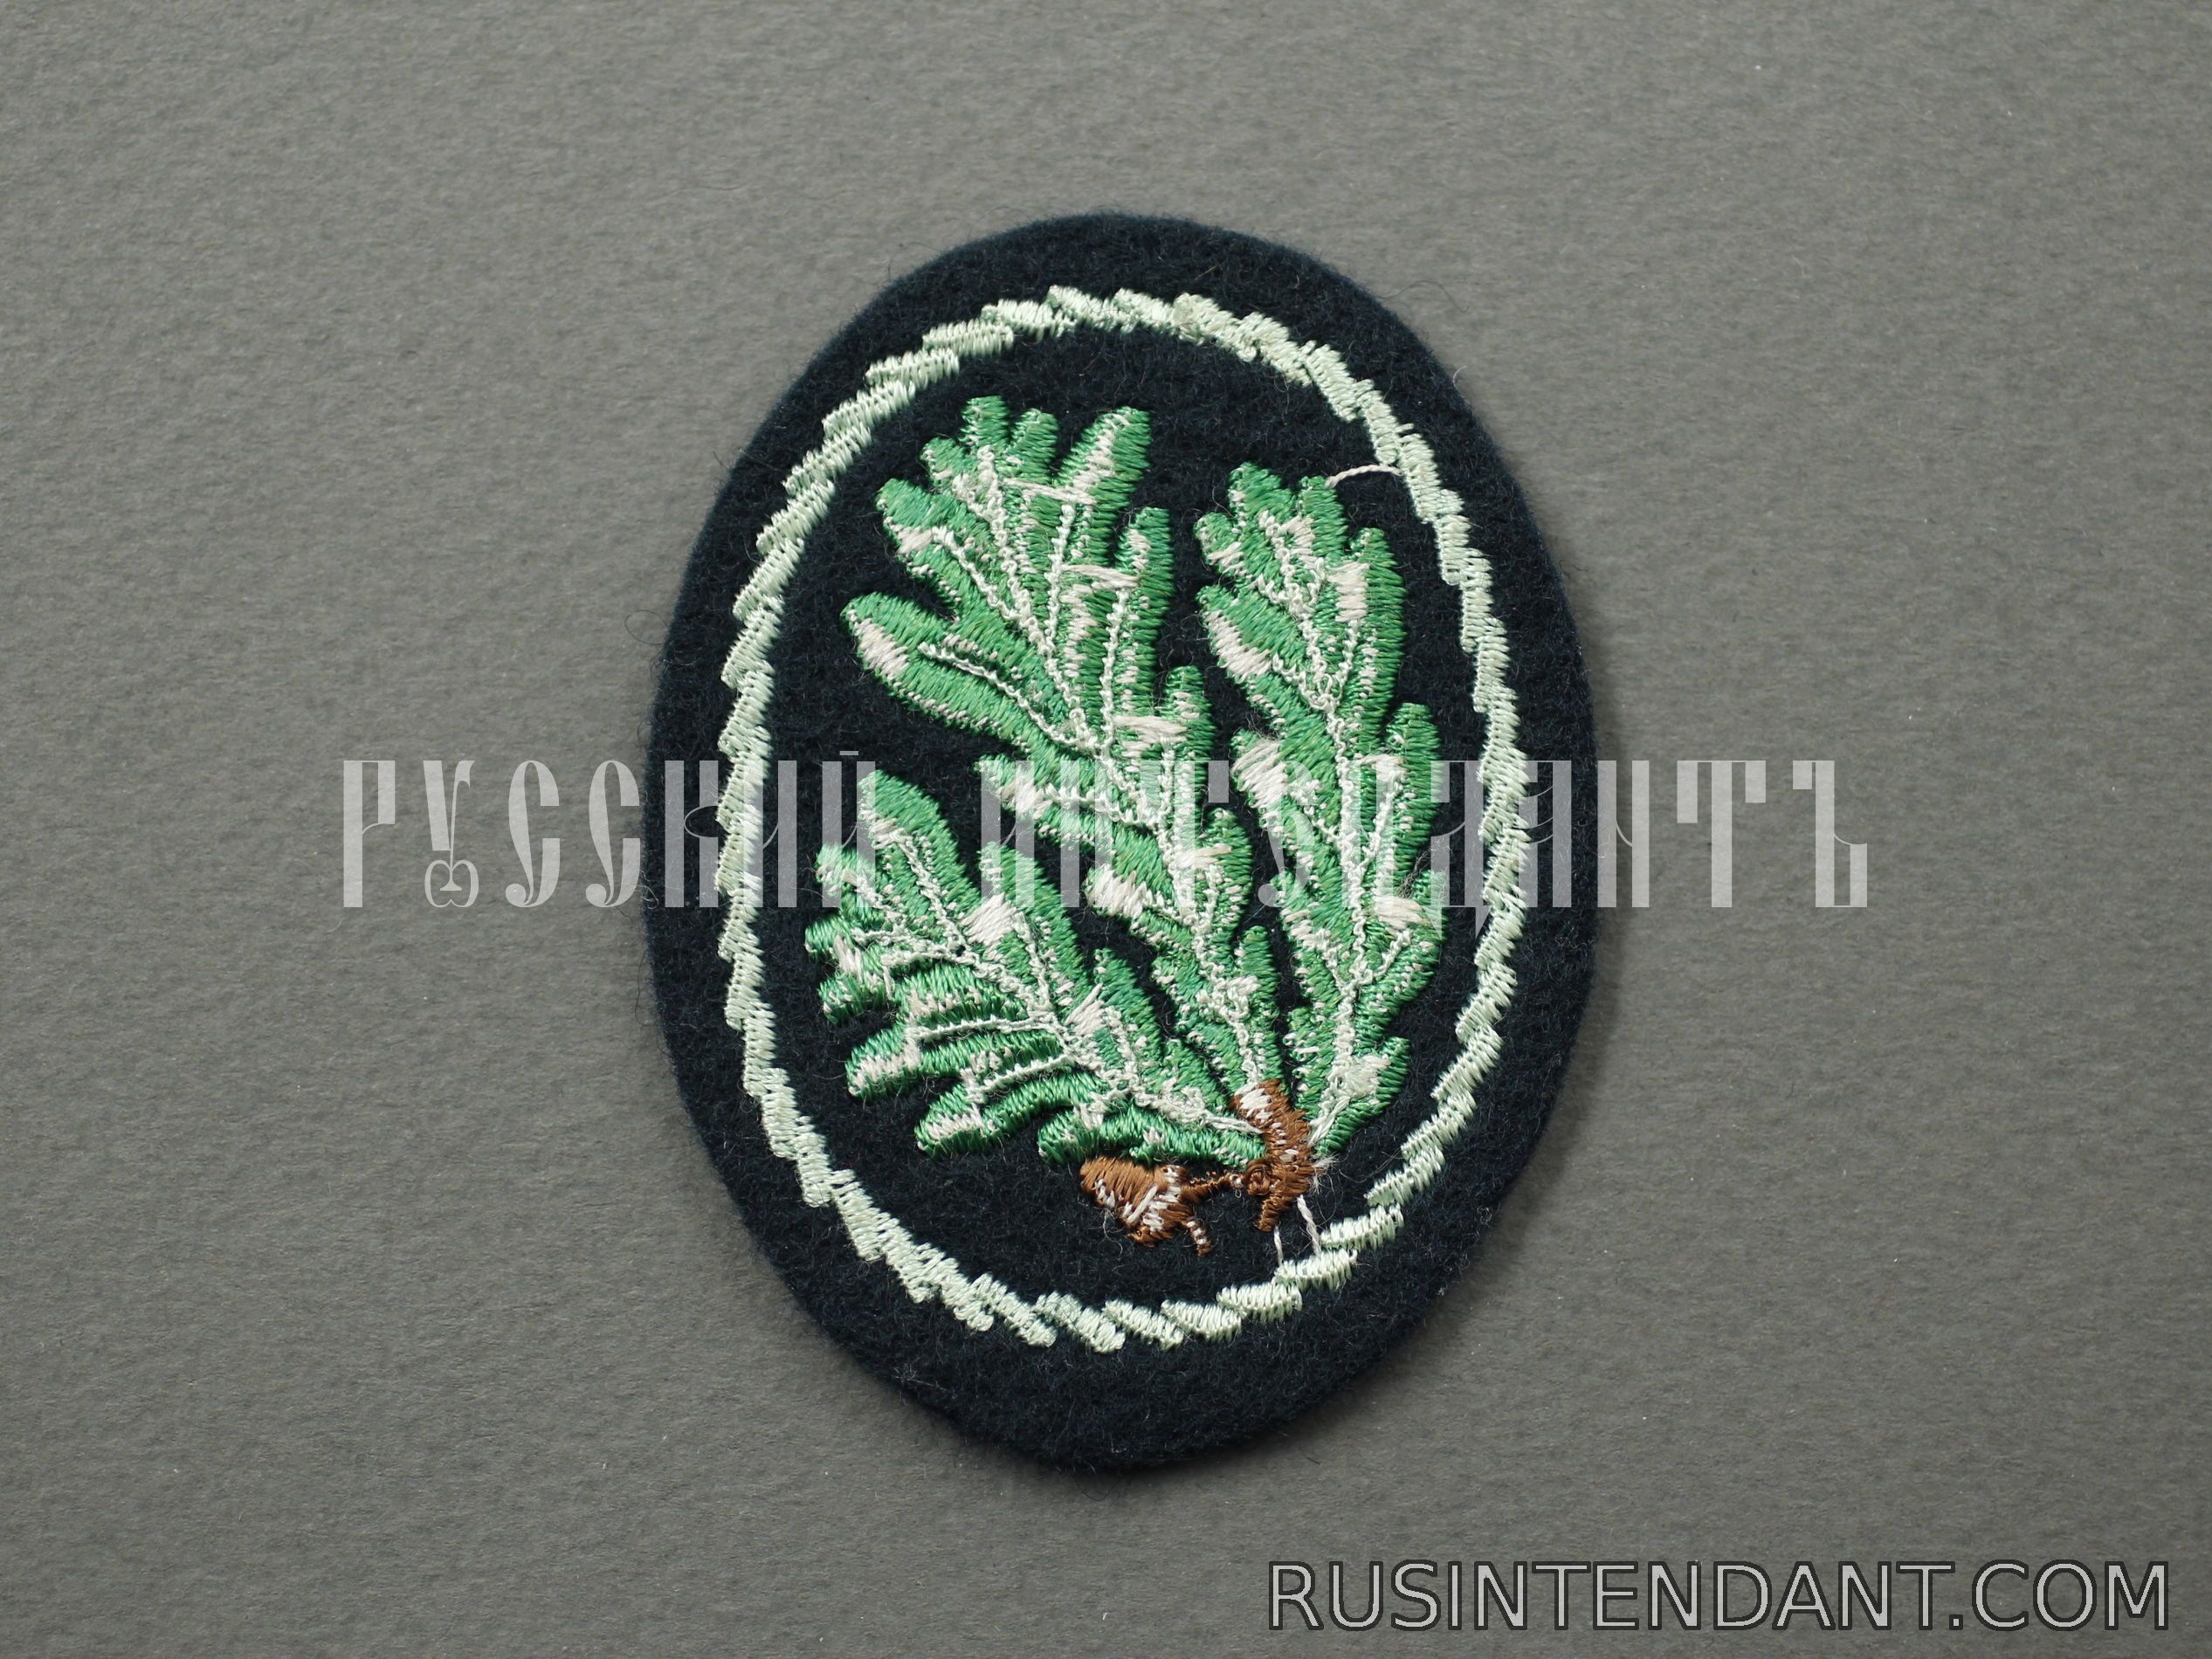 Фото 2: Нарукавная эмблема егерских частей Вермахта 